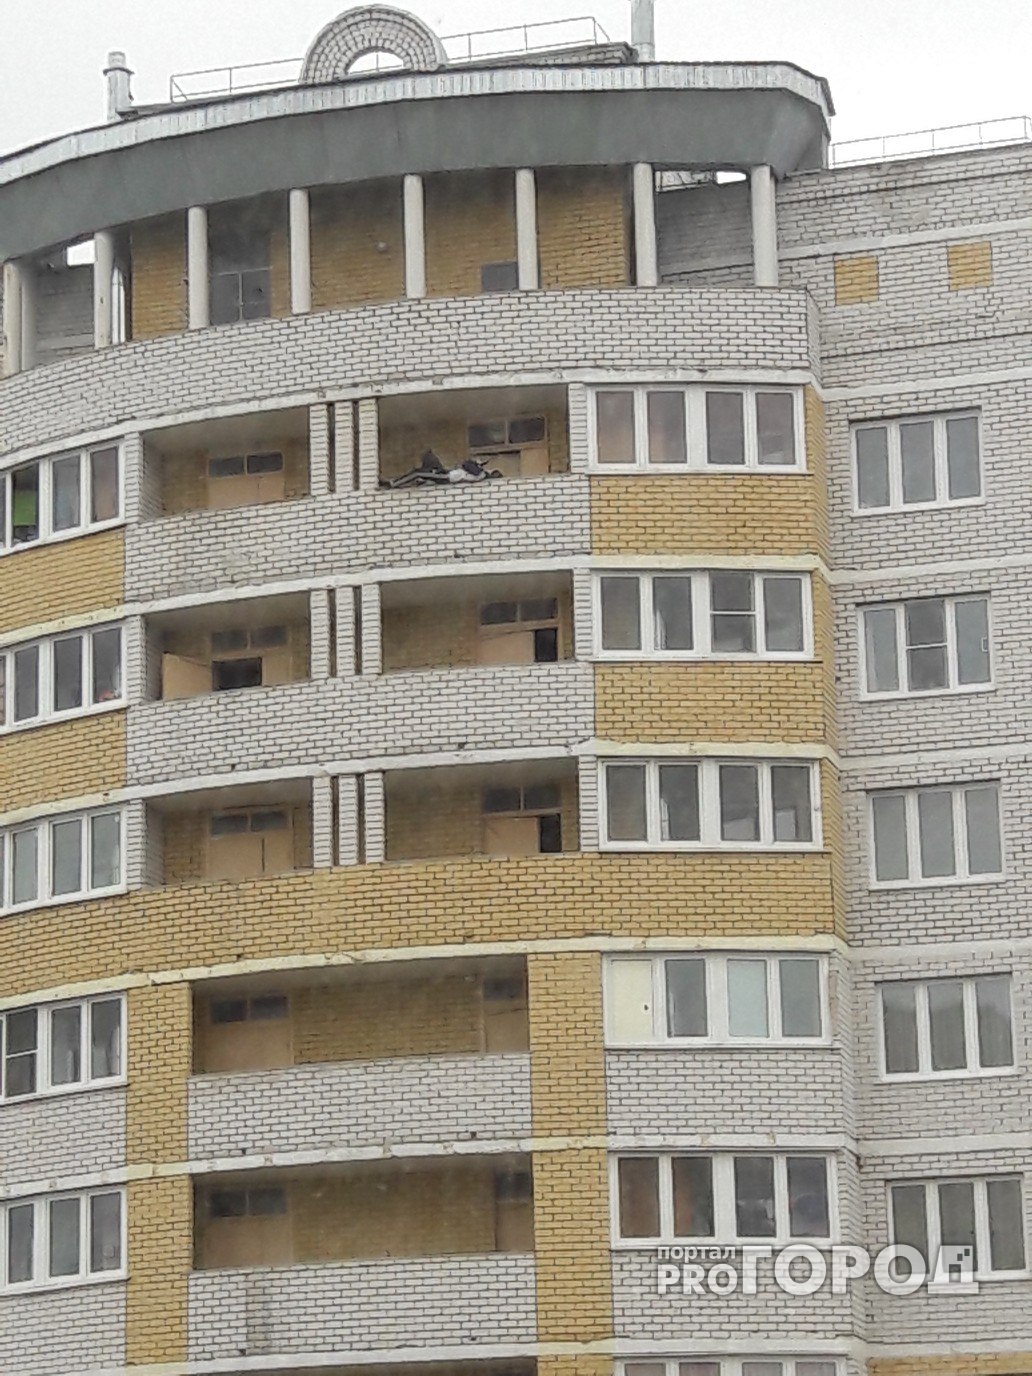 Жителей Чебоксар напугал подросток на краю балкона многоэтажки